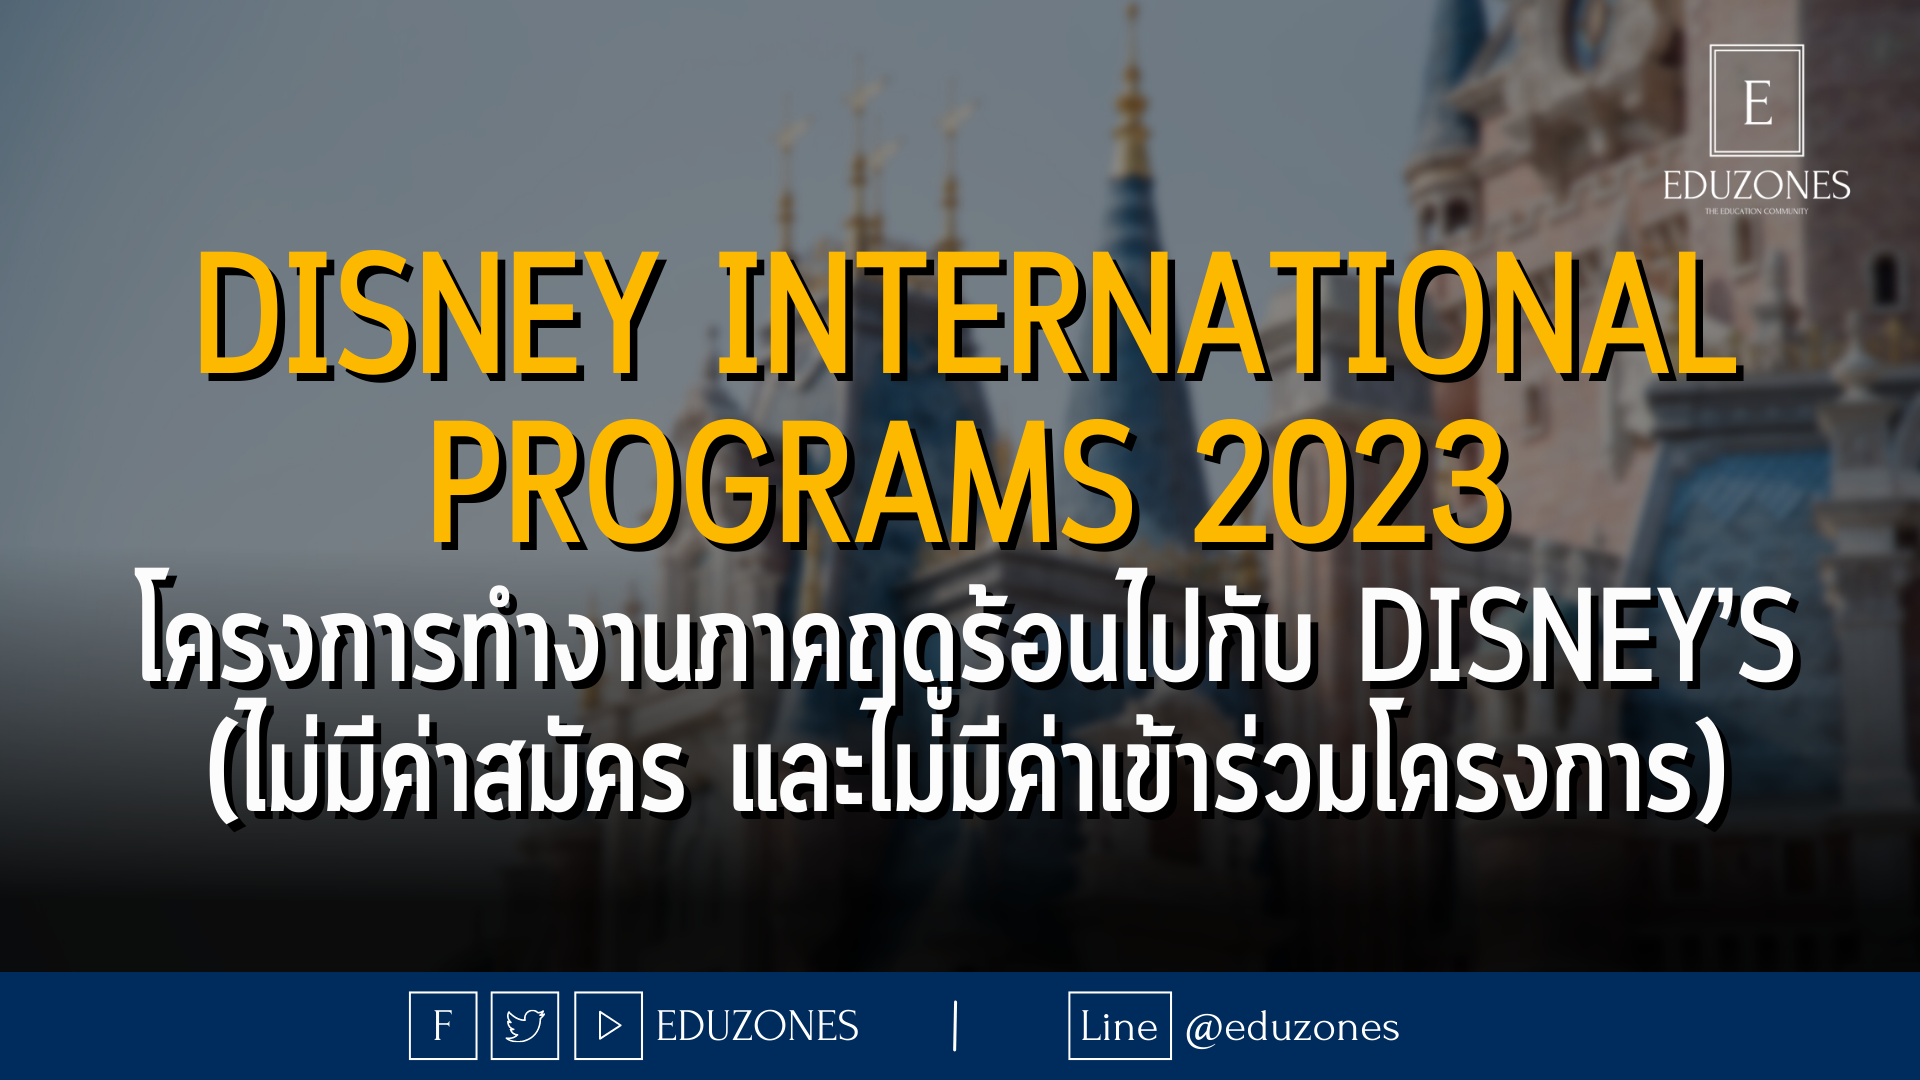 Disney International Programs 2023 โครงการทำงานภาคฤดูร้อนไปกับ Disney’s (ไม่มีค่าสมัคร และไม่มีค่าเข้าร่วมโครงการ)